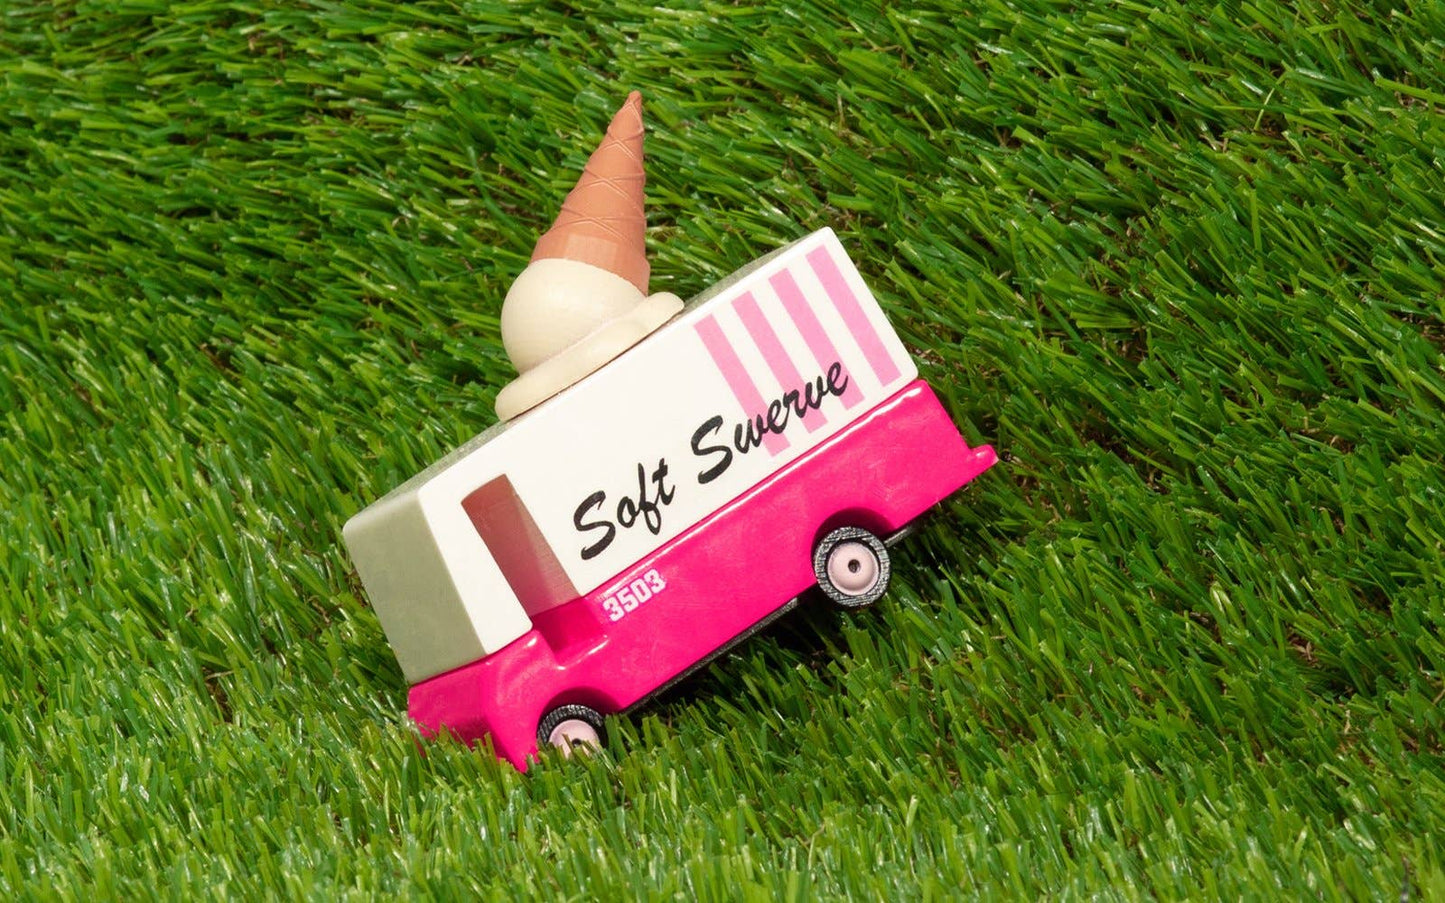 Toy Car - Ice Cream Van